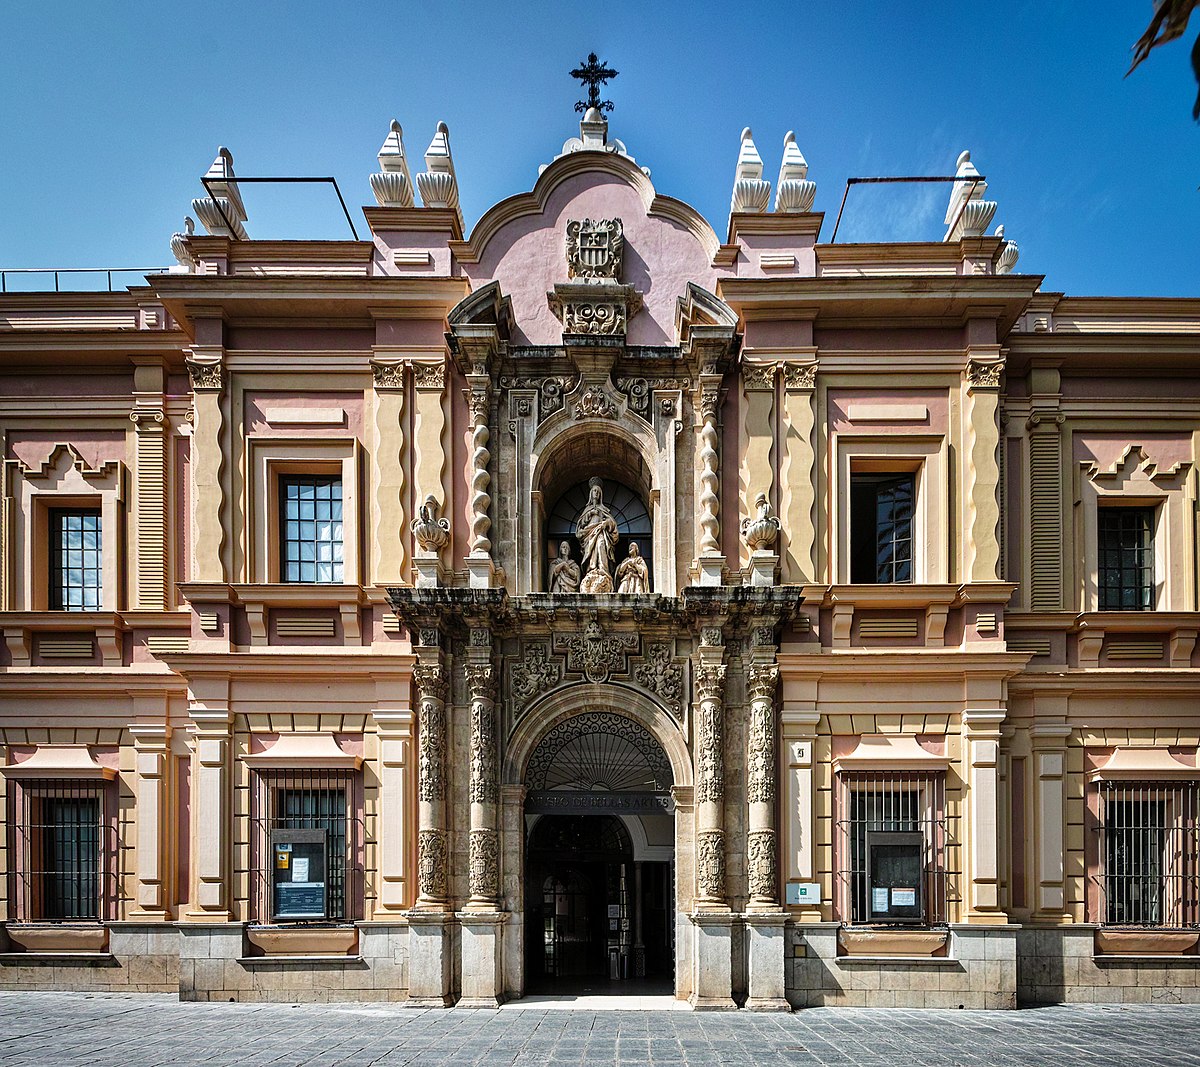 Licuar Reino Apariencia Museo de Bellas Artes de Sevilla - Wikipedia, la enciclopedia libre